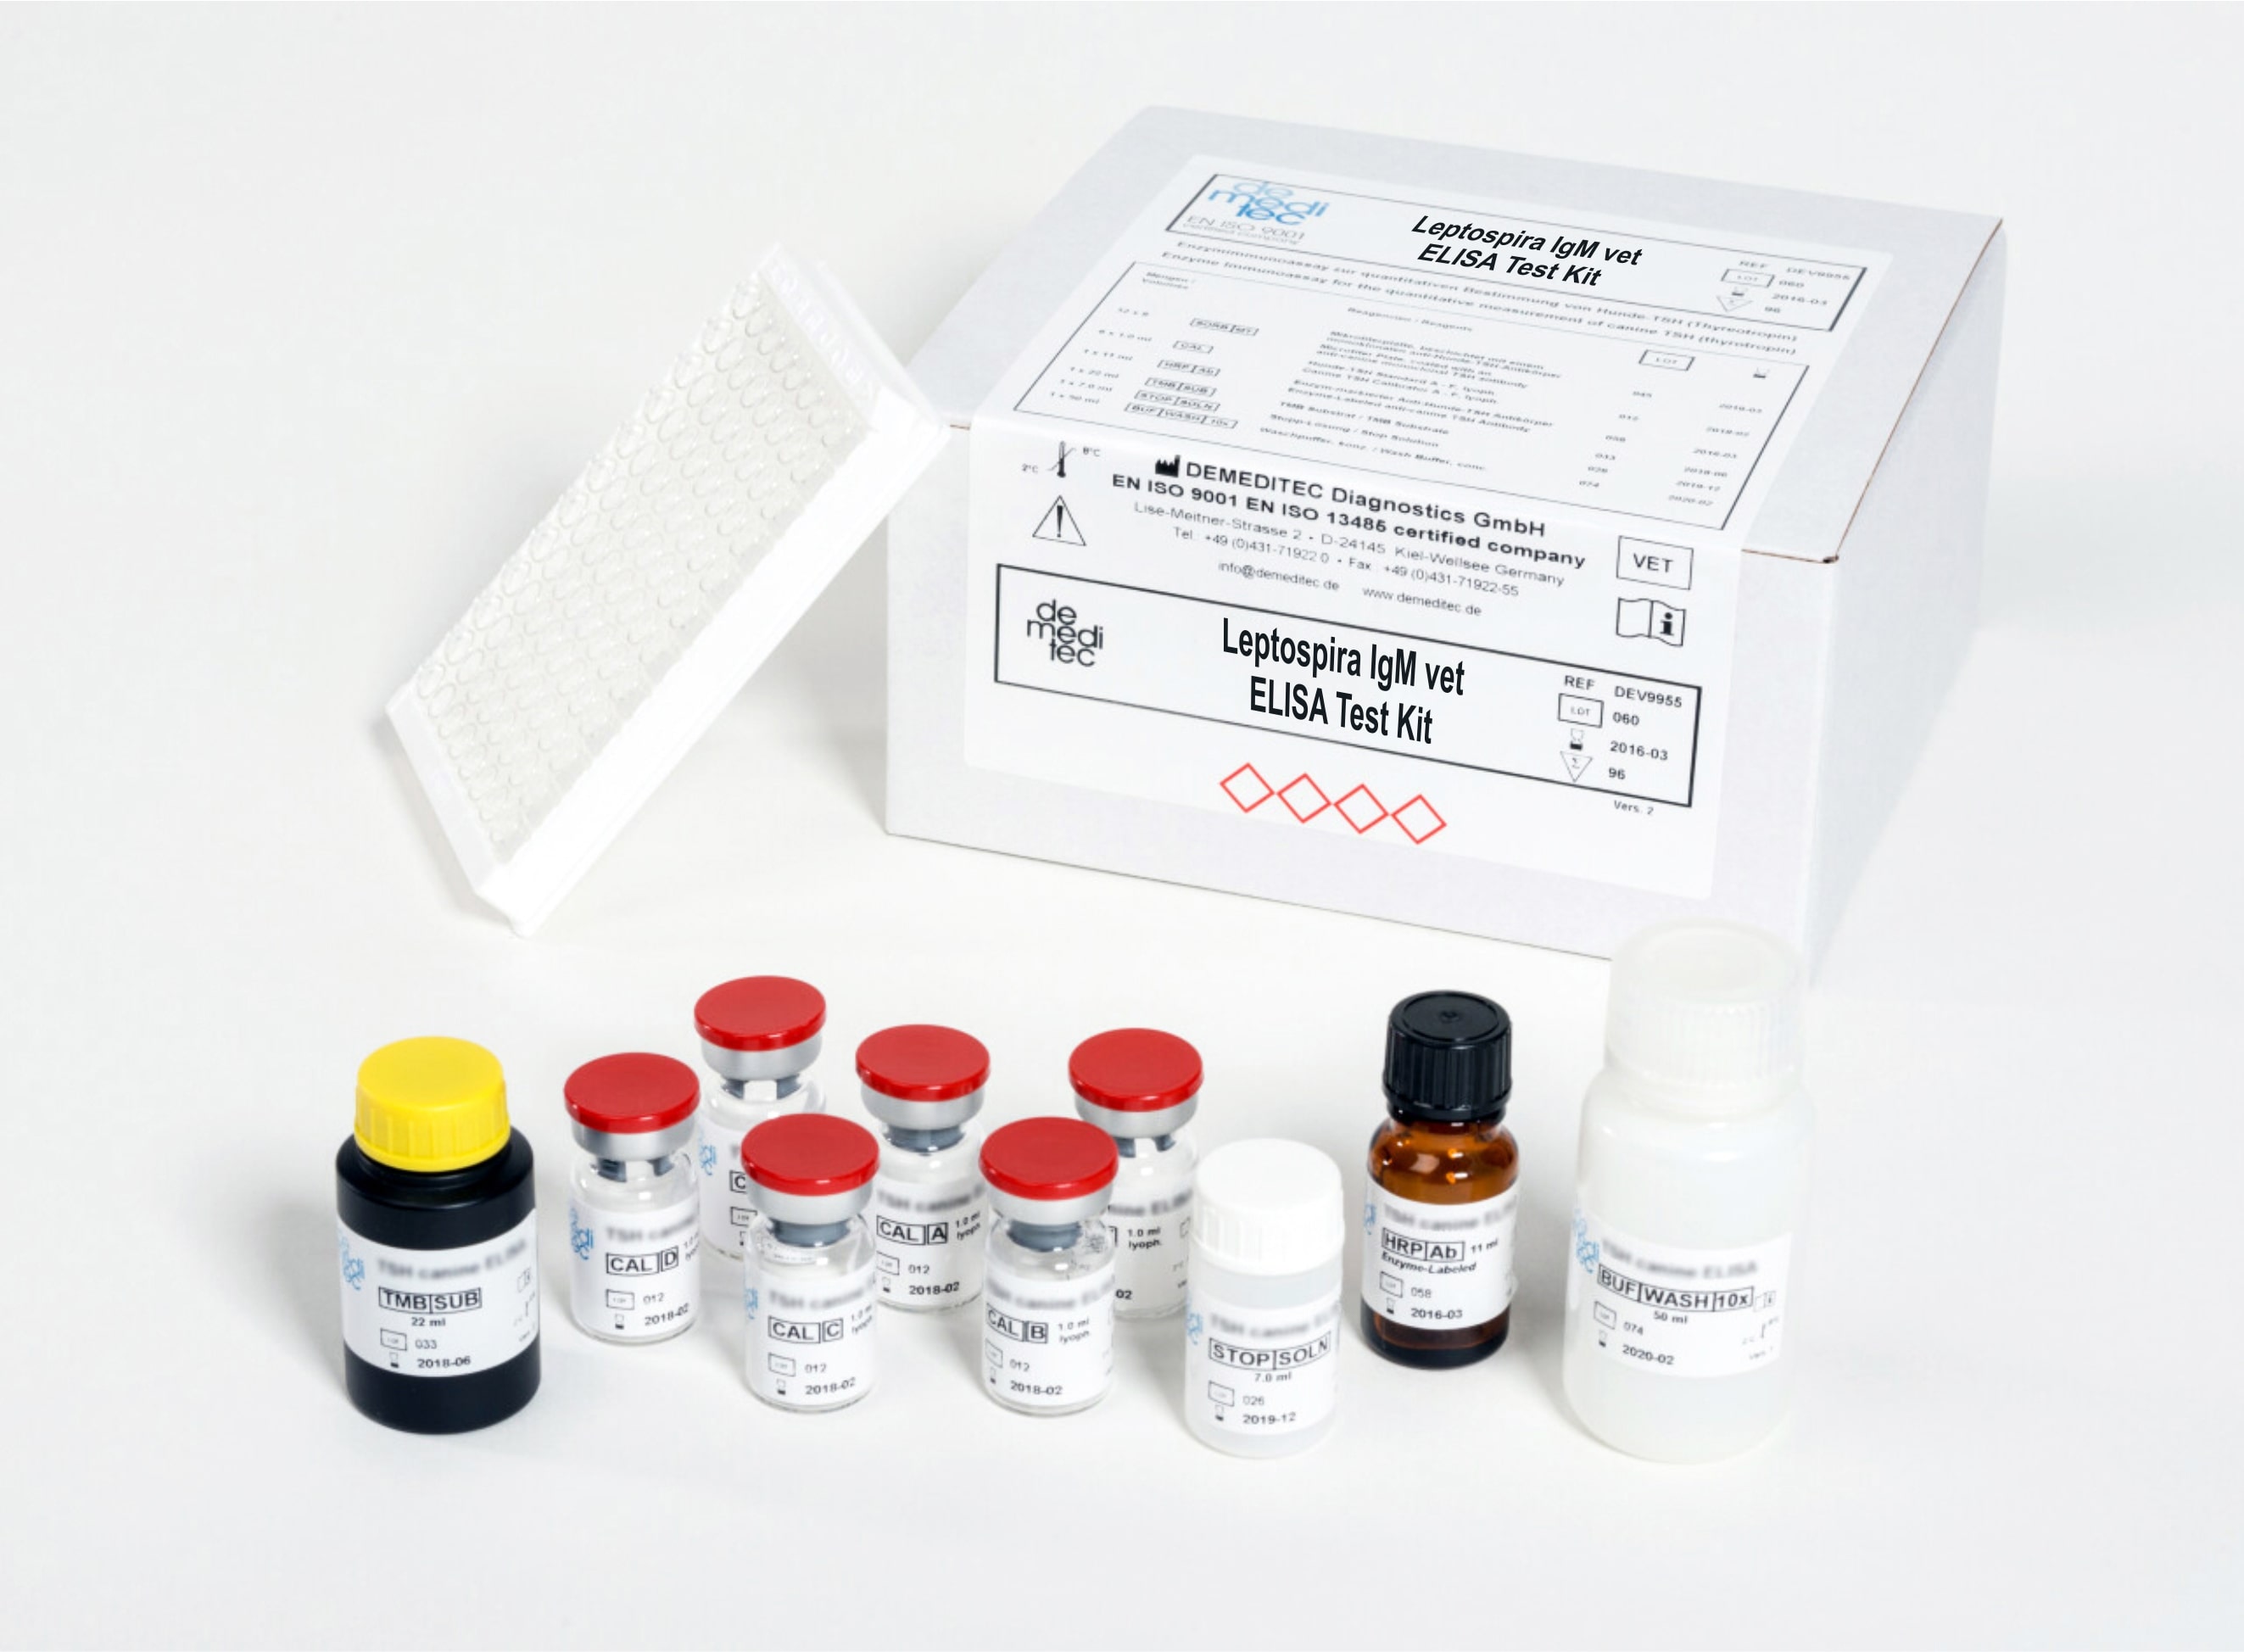 Leptospira IgM vet ELISA Test Kit (various)